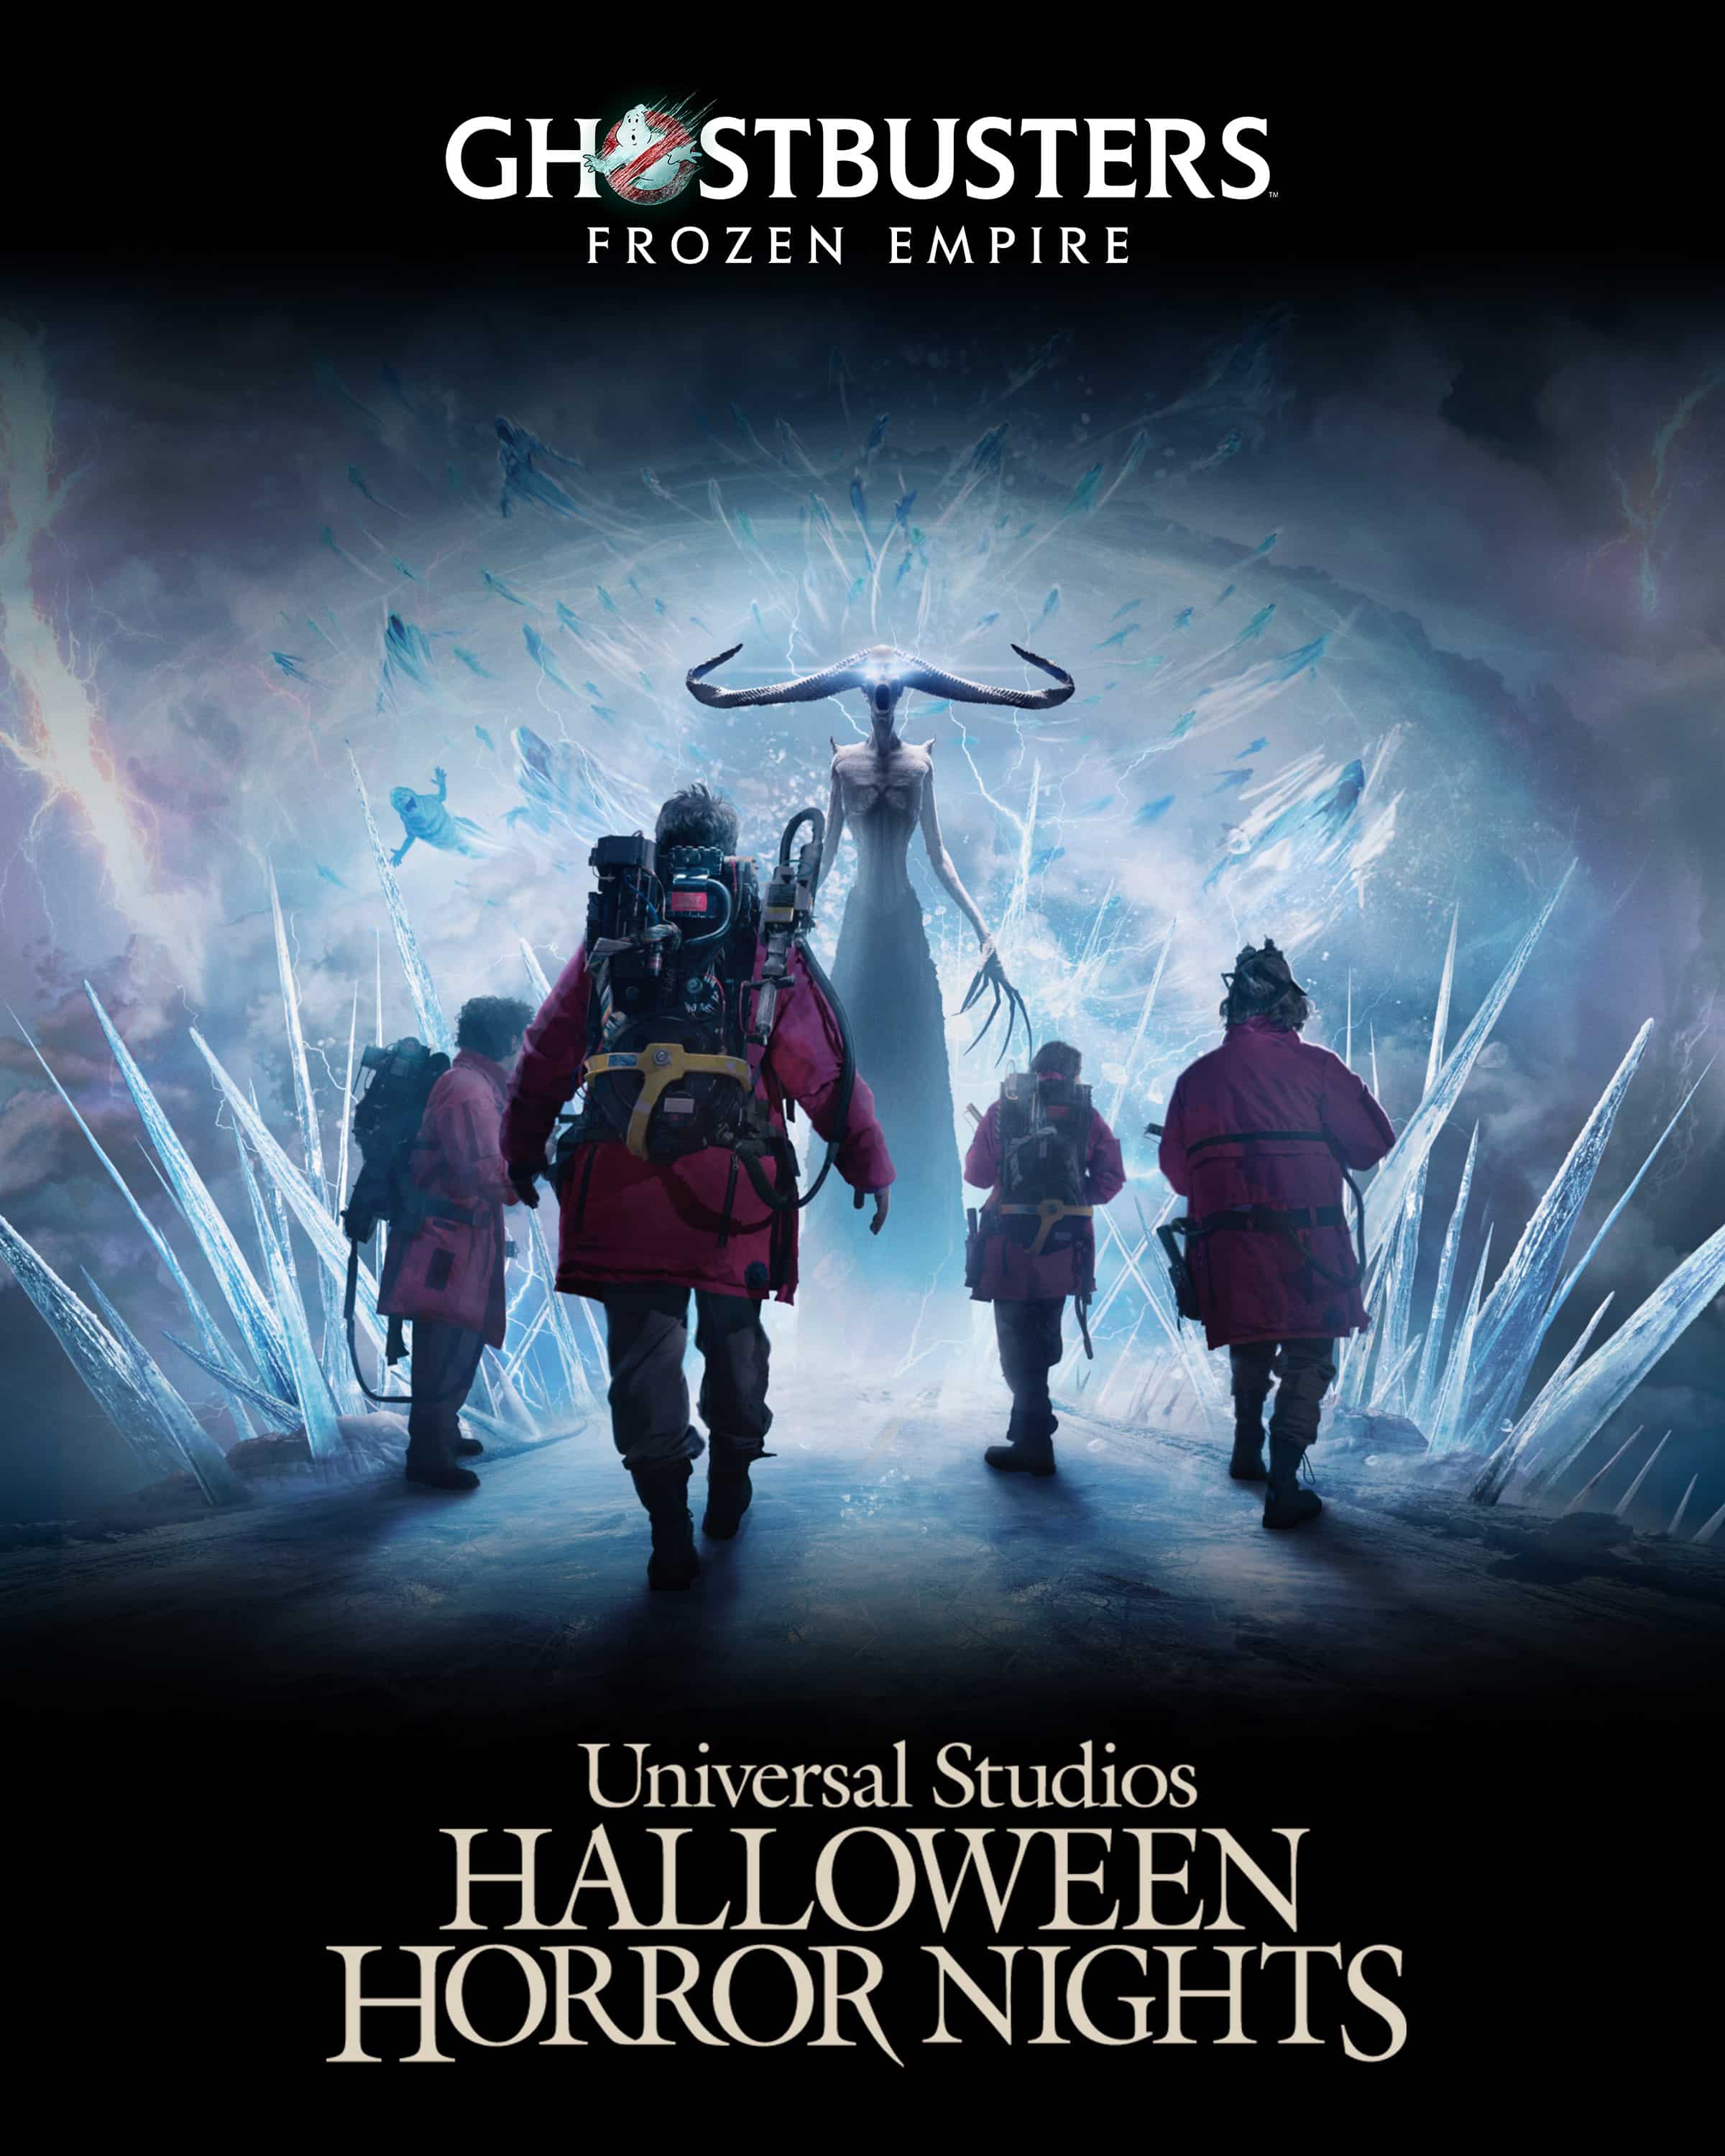 Universal Studios Halloween Horror Nights Ghostbusters Frozen Empire